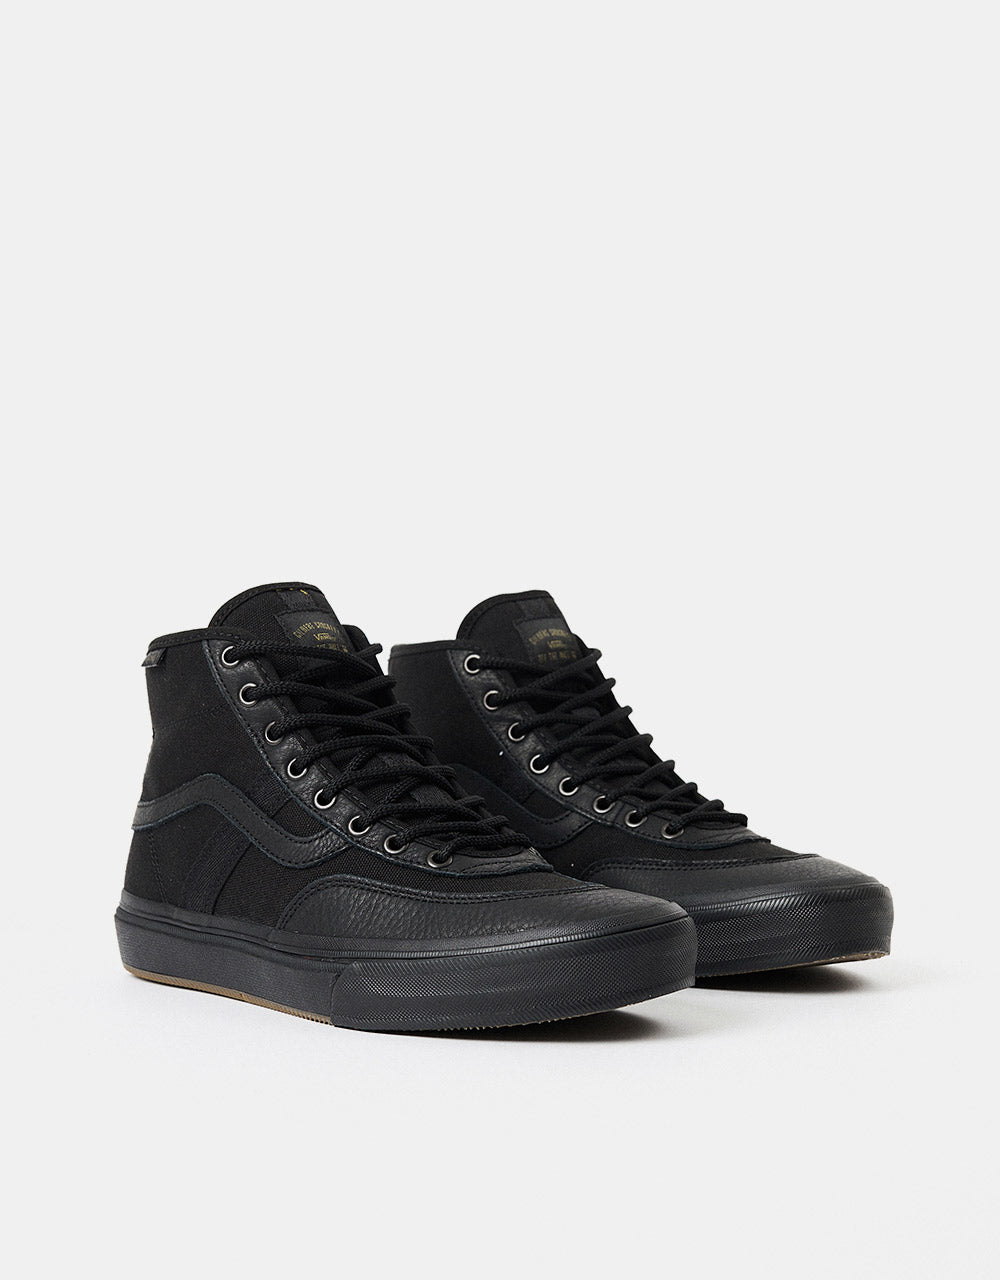 Vans Crockett High Skate Shoes - (Butter Leather) Black/Black